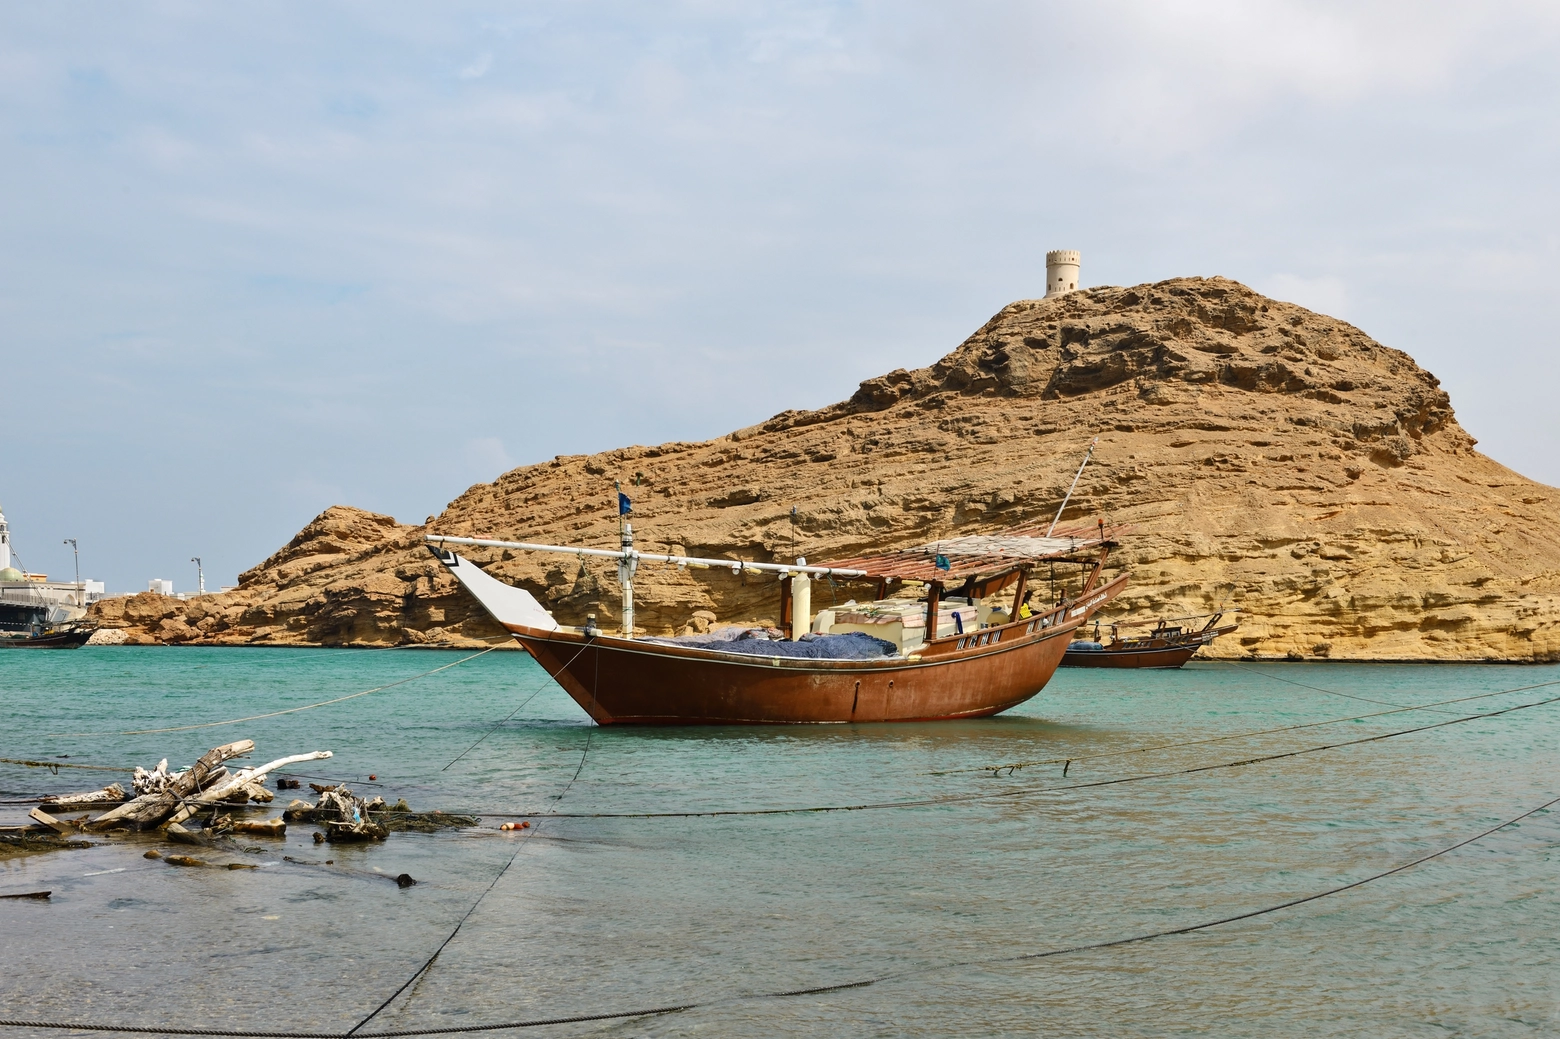 Un dhow, la tradizionale barca araba